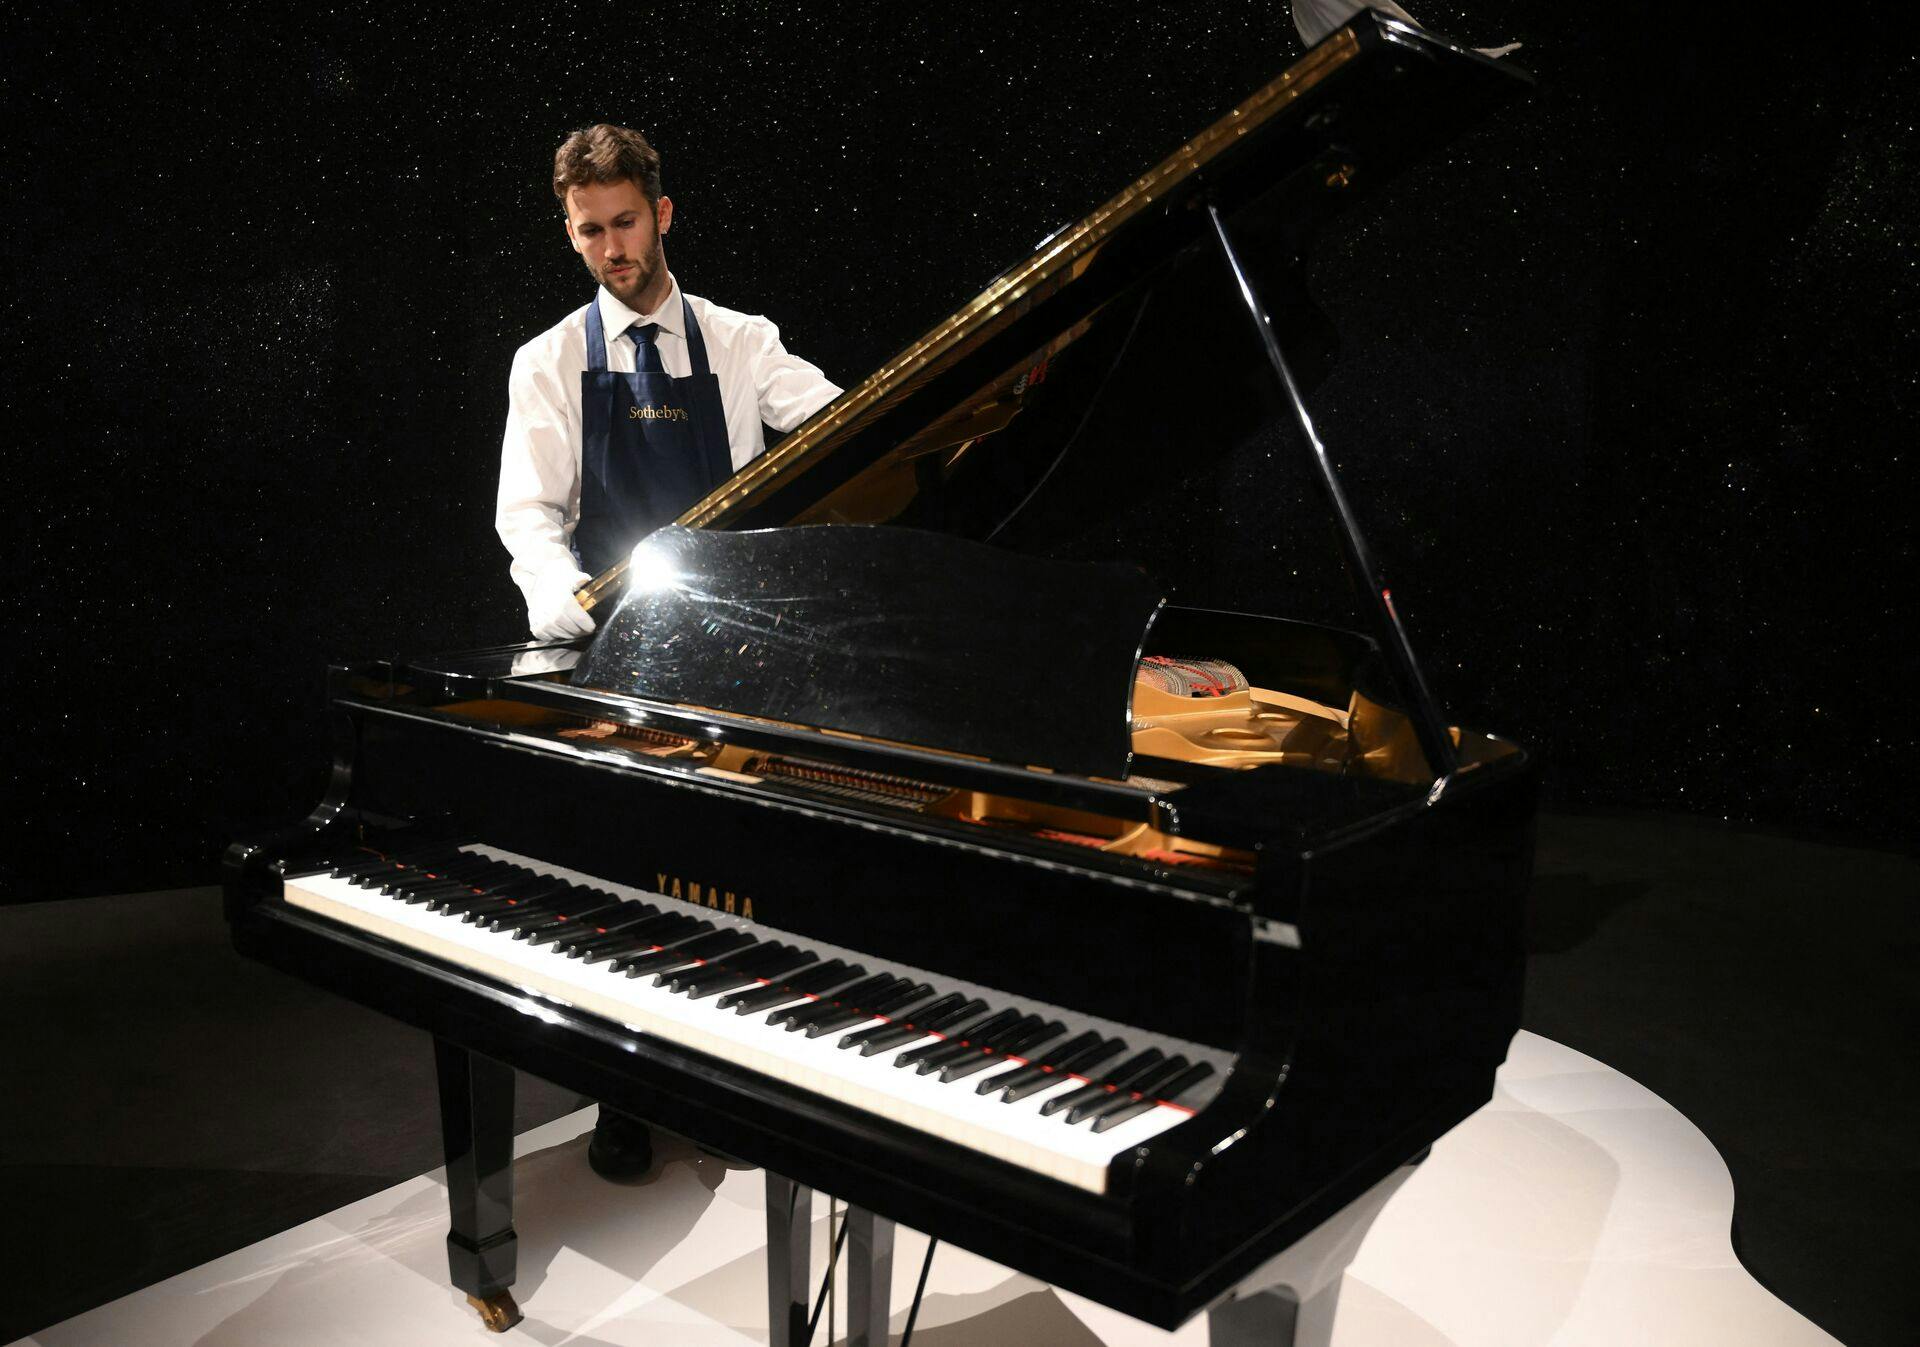 Freddie Mercurys Yamaha G-2 piano er til salg på auktion og kan blive dit - hvis du har råd!